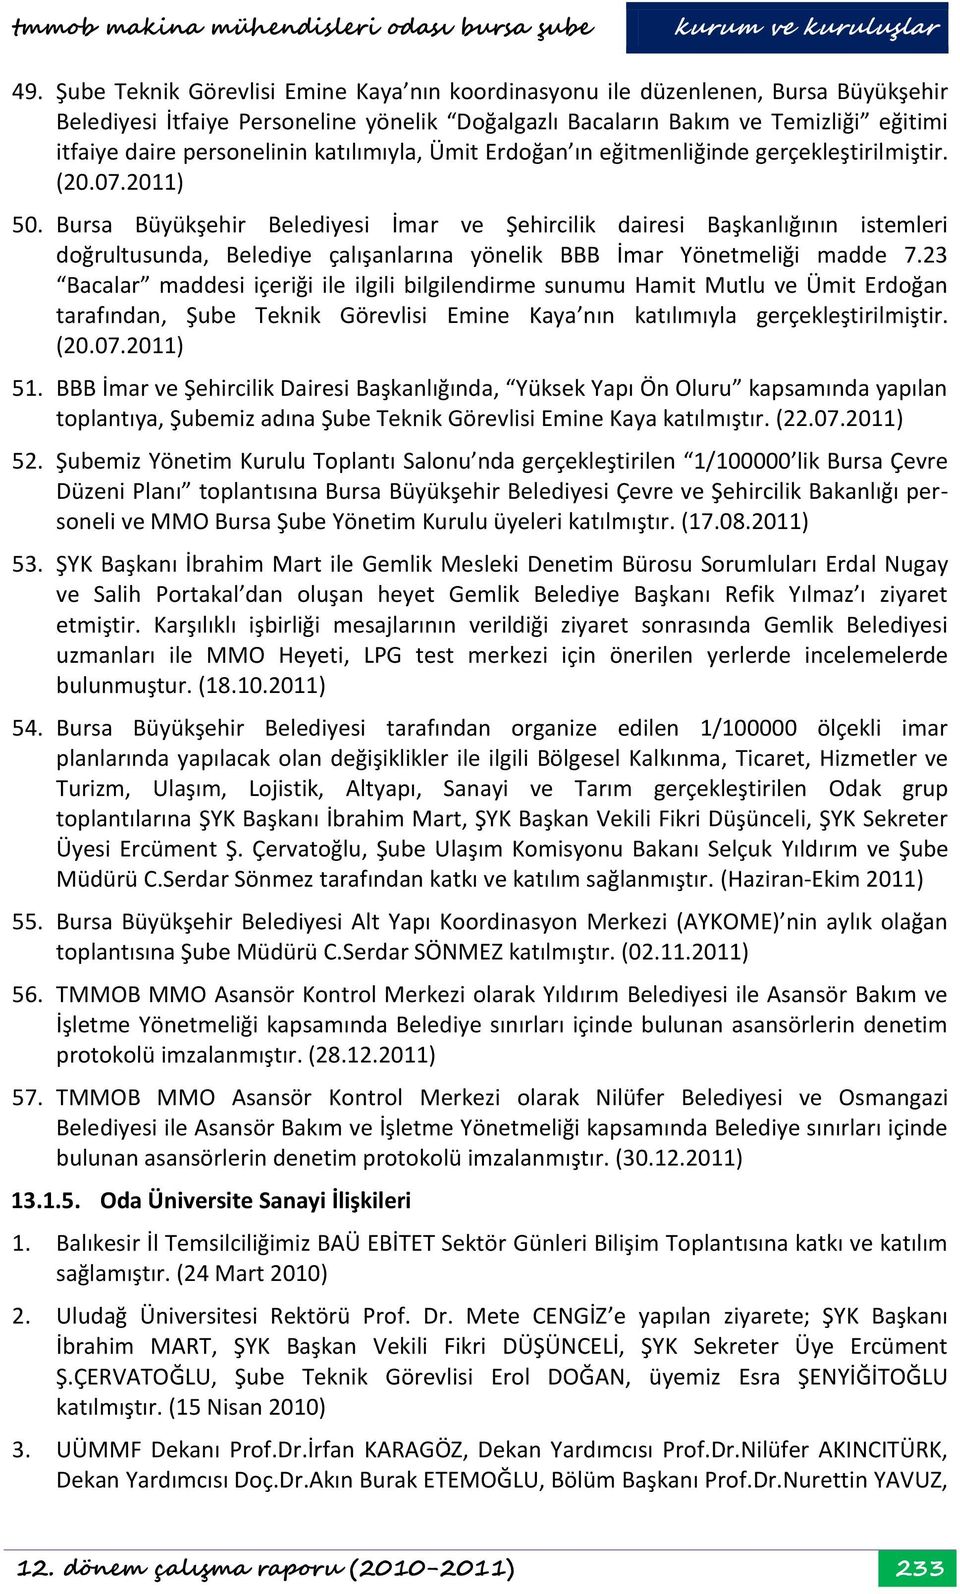 Bursa Büyükşehir Belediyesi İmar ve Şehircilik dairesi Başkanlığının istemleri doğrultusunda, Belediye çalışanlarına yönelik BBB İmar Yönetmeliği madde 7.